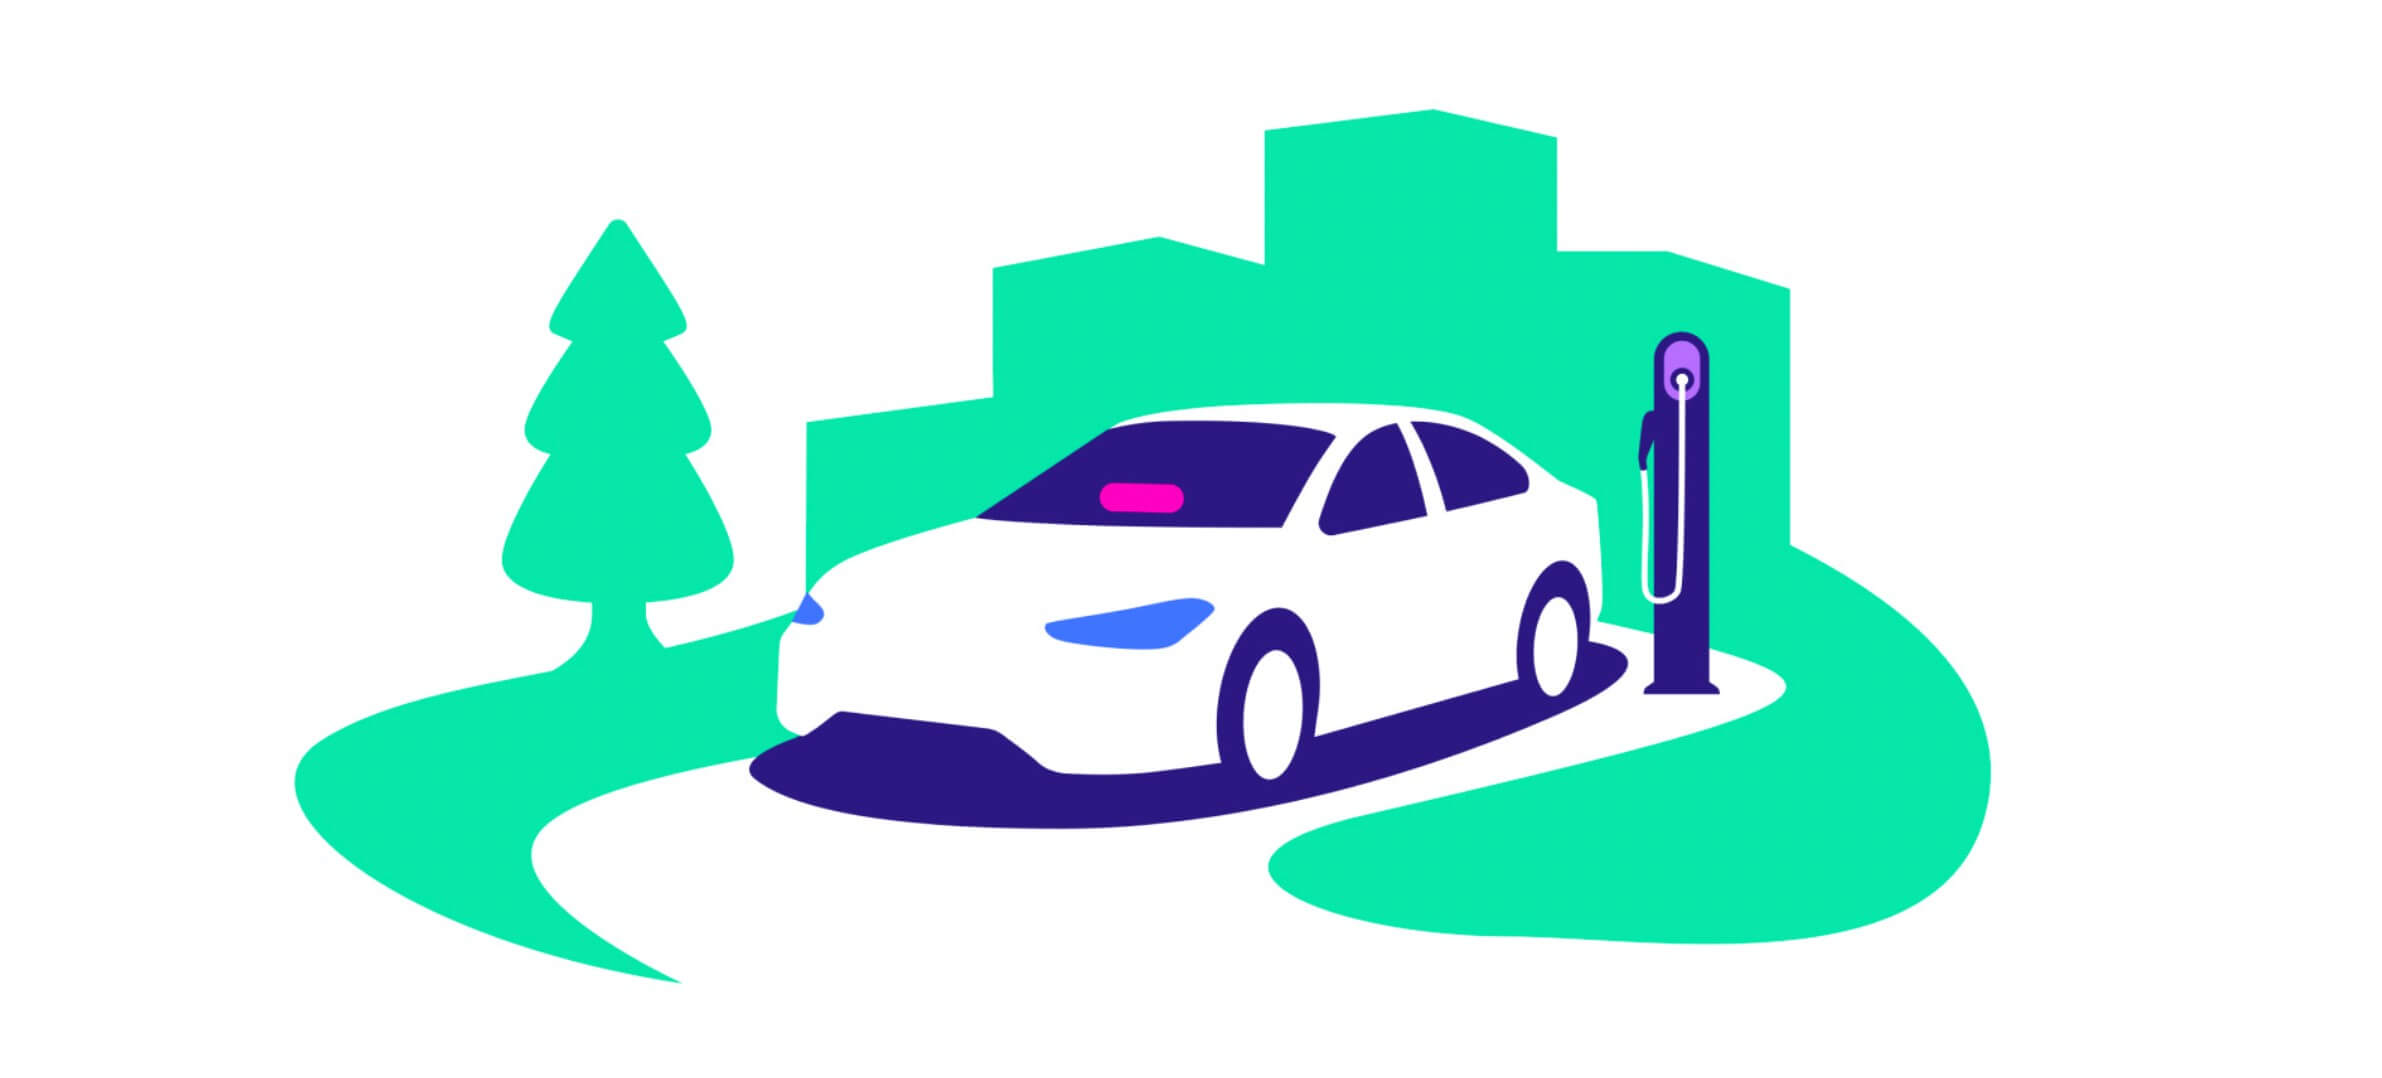 Lyft met les conducteurs au défi de passer aux véhicules électriques avec un nouveau programme incitatif